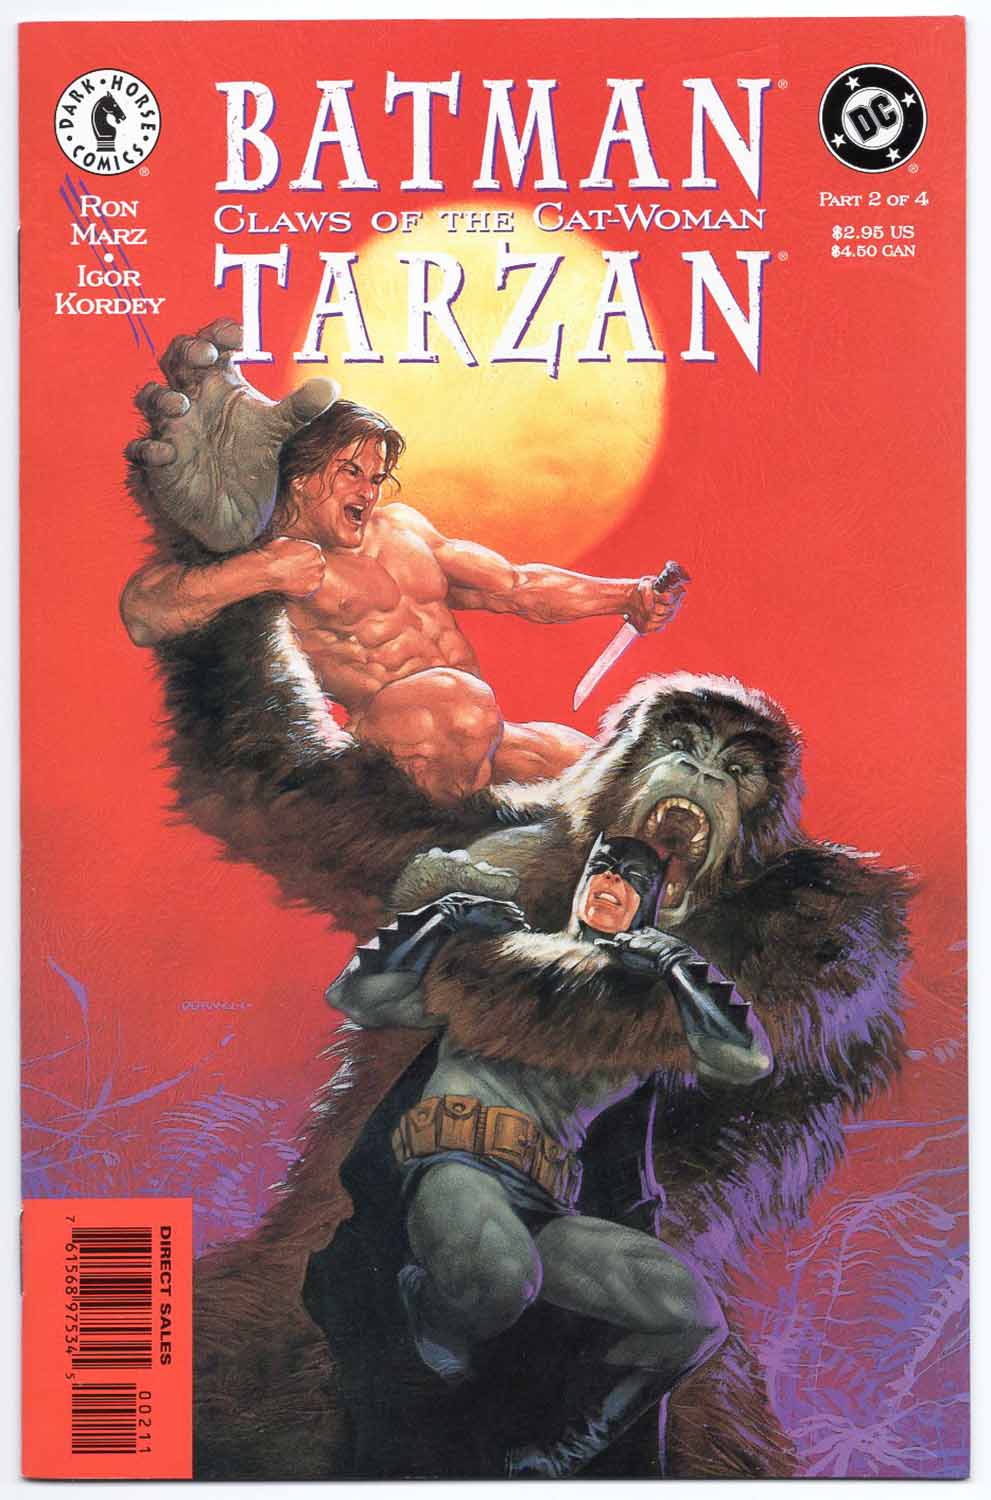 Batman/Tarzan Claws of the Cat-Woman #2